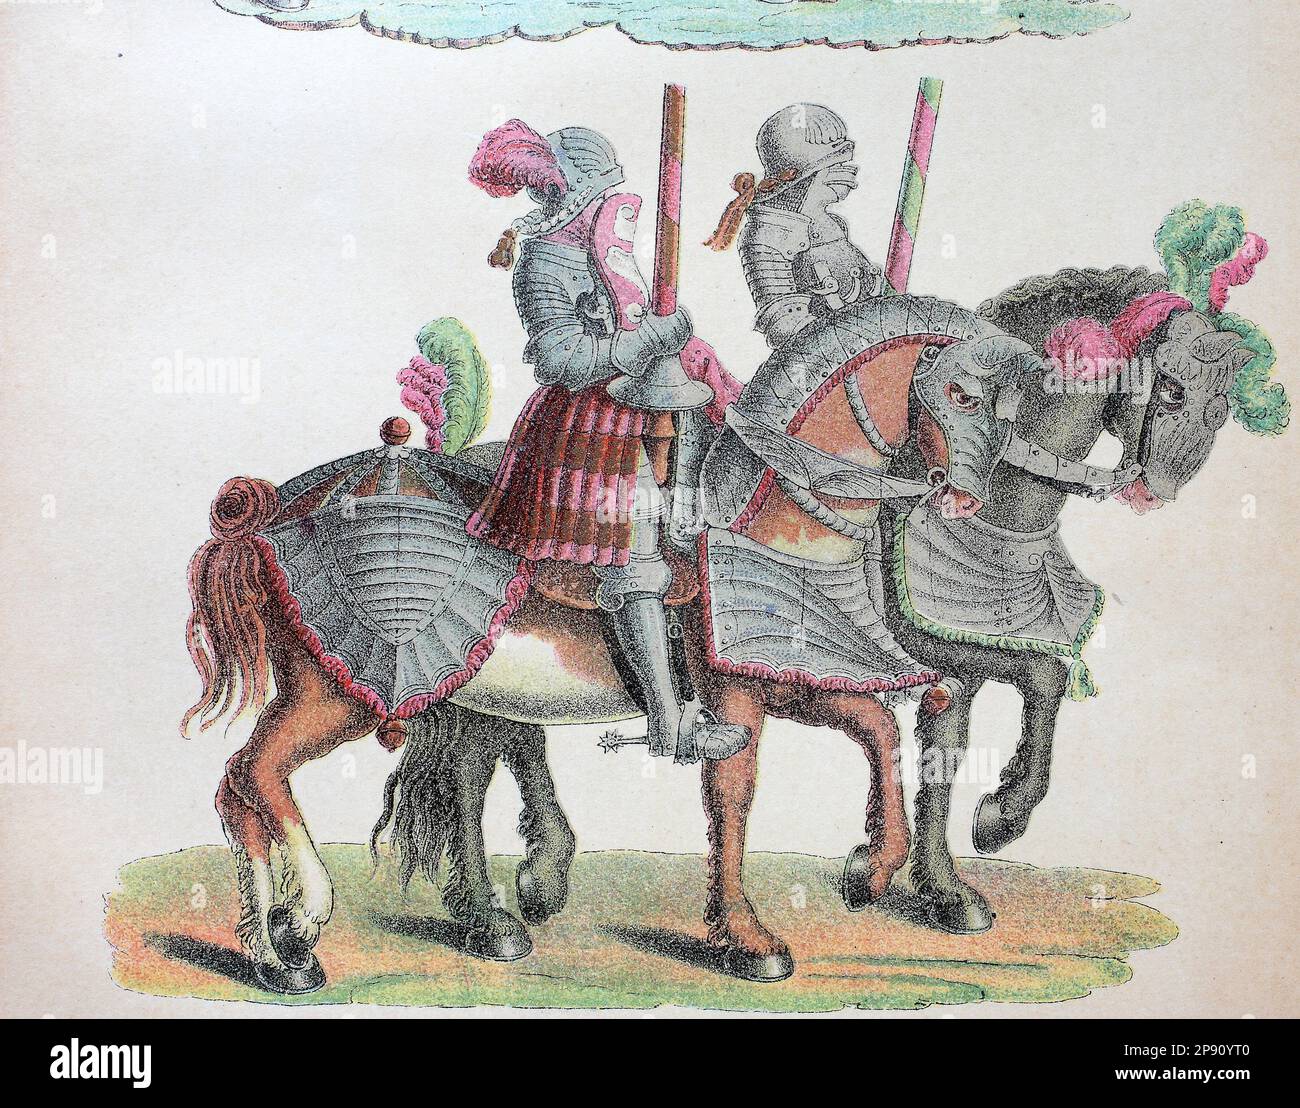 Ritter mit Pferd ziehen zum Turnier, aus dem Turnierbuch von Kaiser Maximilian, Historisch, digital restaurierte Reproduktion von einer Vorlage aus dem 19. Jahrhundert Stock Photo